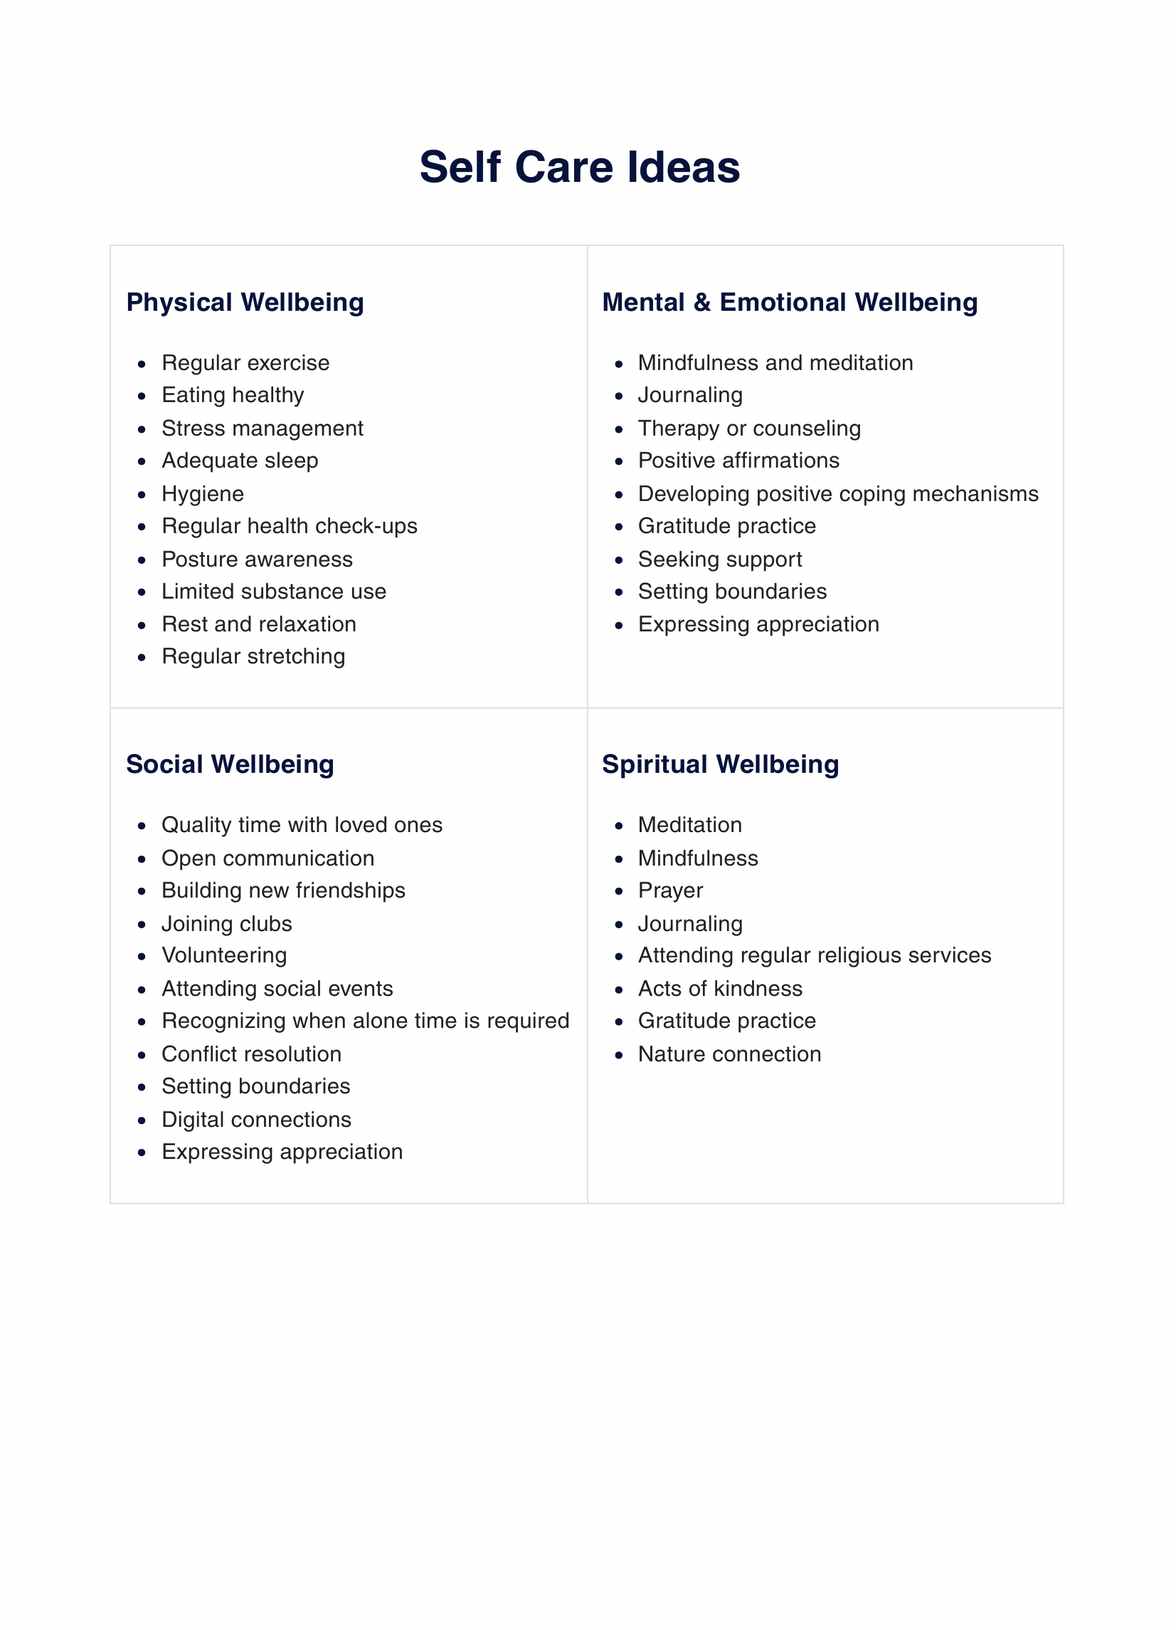 Self Care Ideas PDF PDF Example